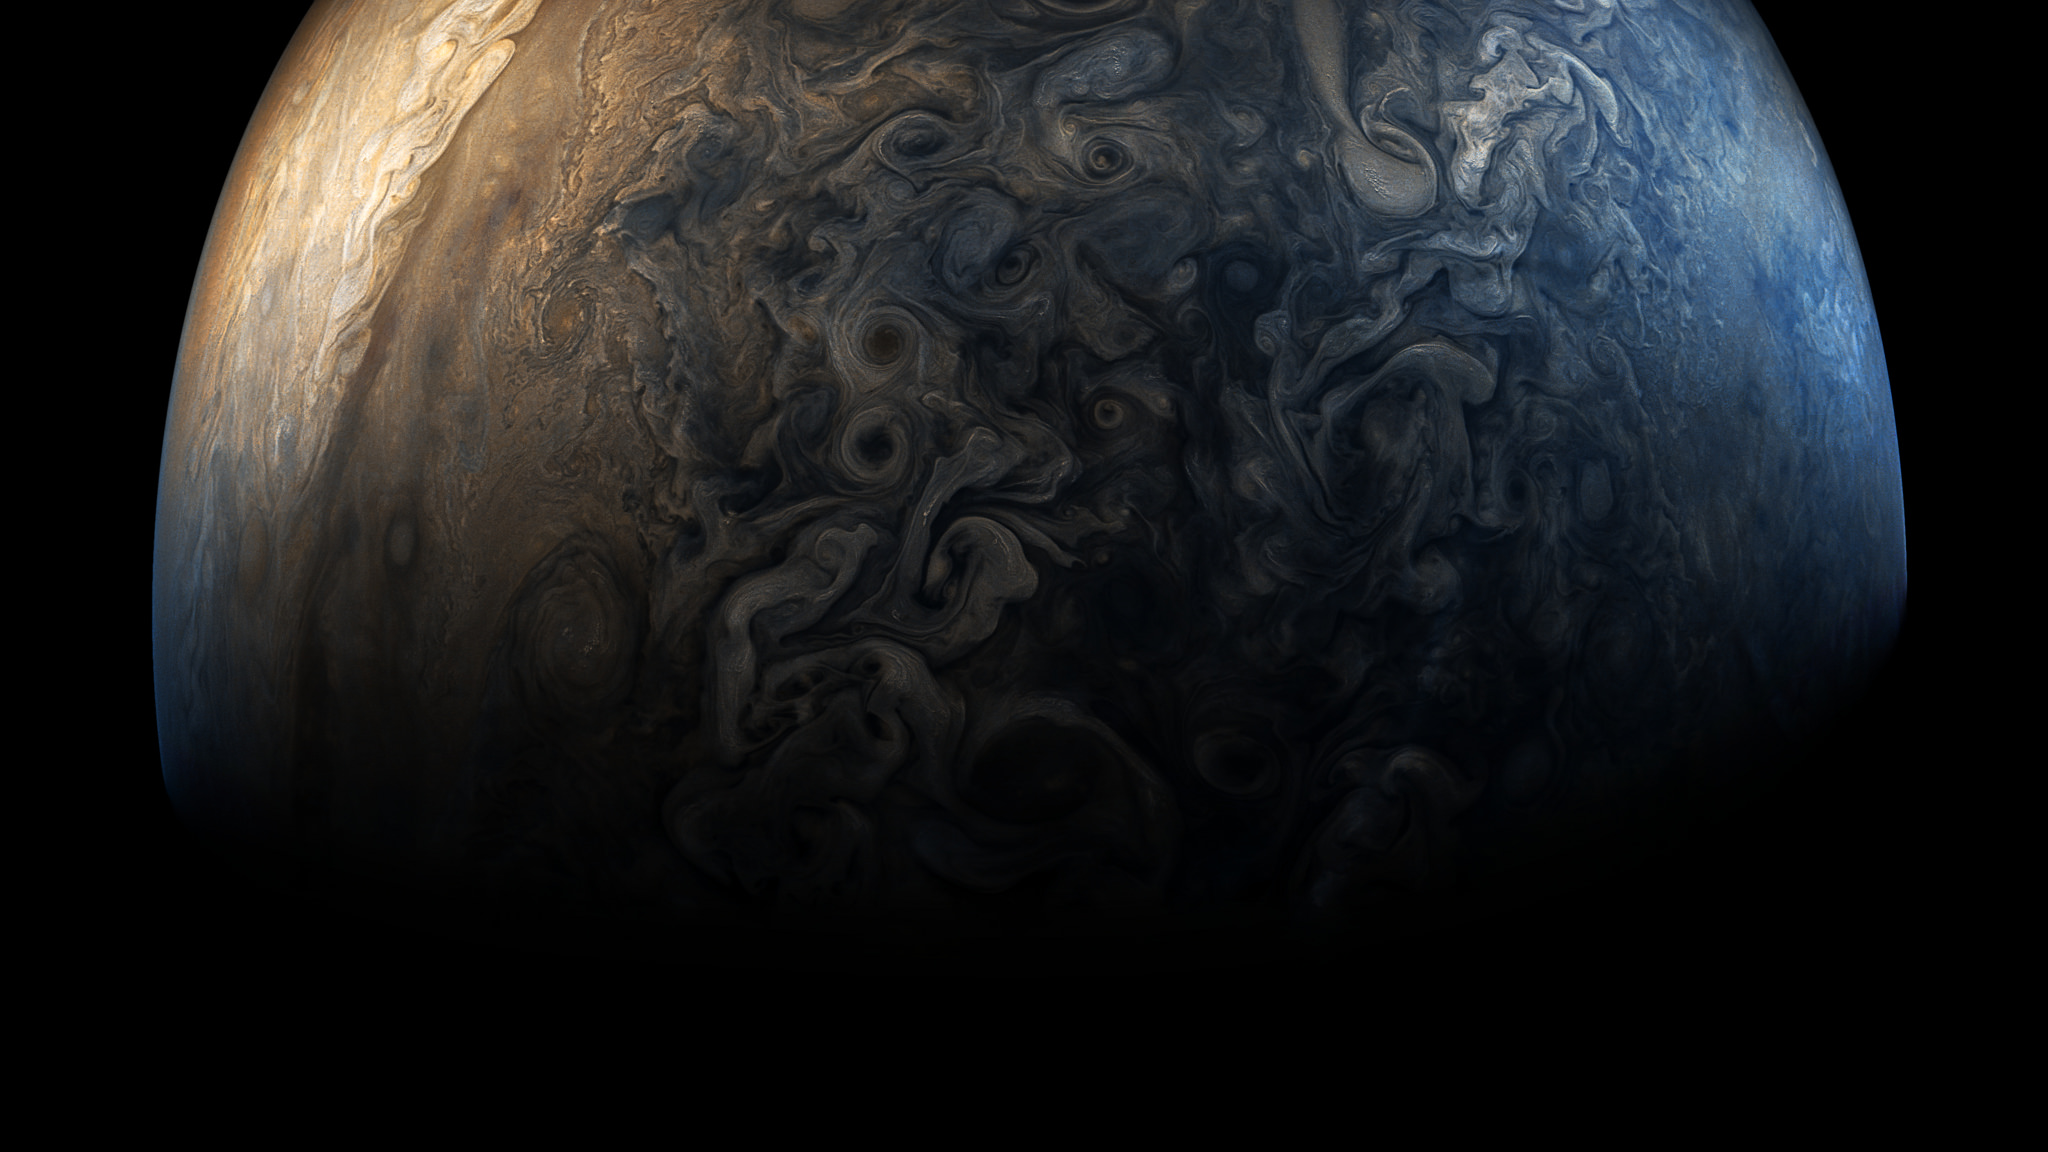 Jupiter en 2017. Image traitée prise par la sonde Juno. Le pôle sud de la géante gazeuse est à droite. La variété de ses phénomènes atmosphériques est fascinante. © Nasa, SwRI, MSSS, Gerald Eichstädt, Seán Doran